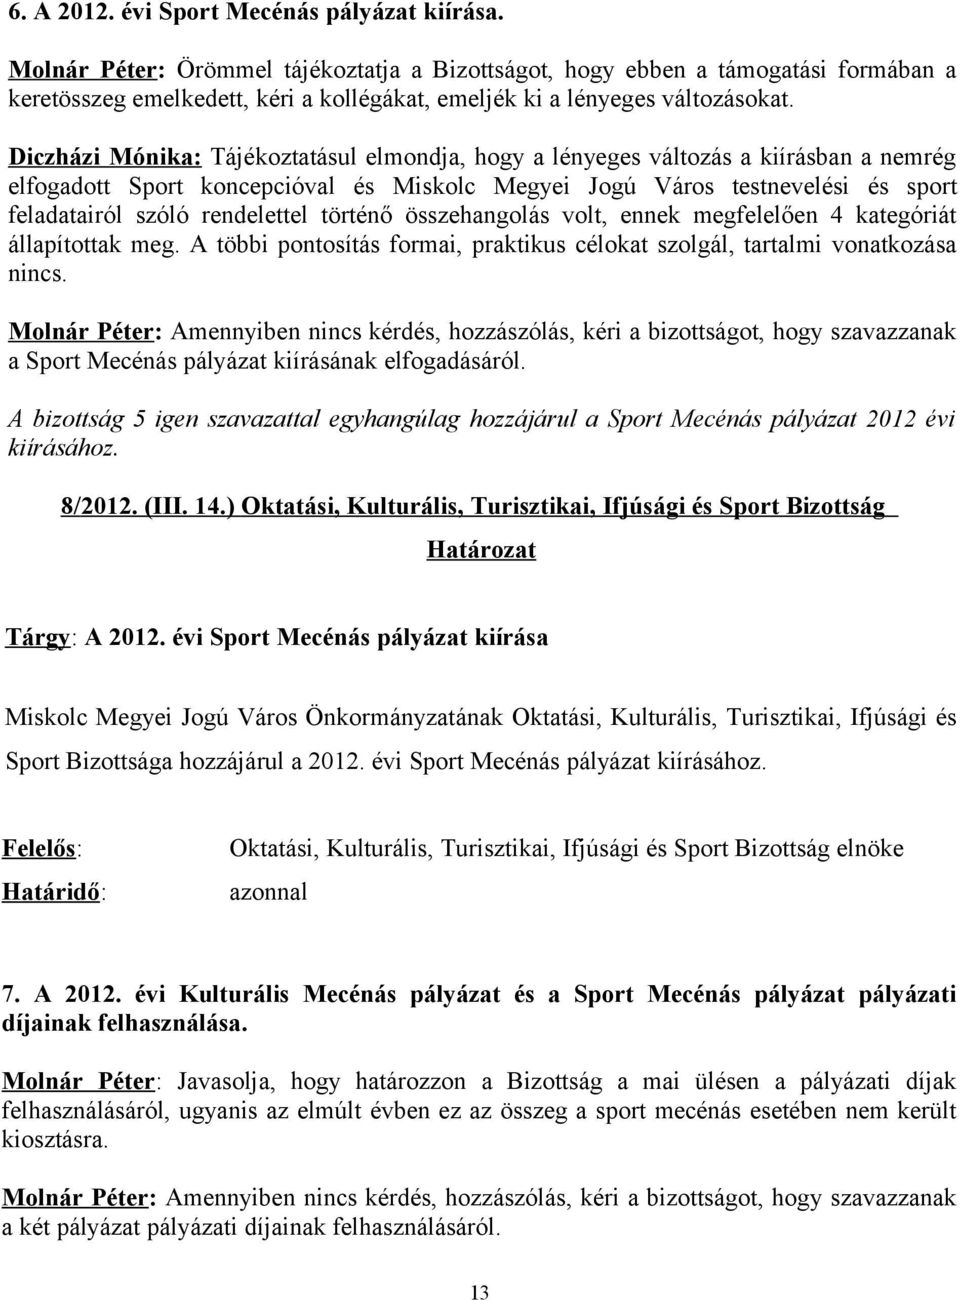 Diczházi Mónika: Tájékoztatásul elmondja, hogy a lényeges változás a kiírásban a nemrég elfogadott Sport koncepcióval és Miskolc Megyei Jogú Város testnevelési és sport feladatairól szóló rendelettel